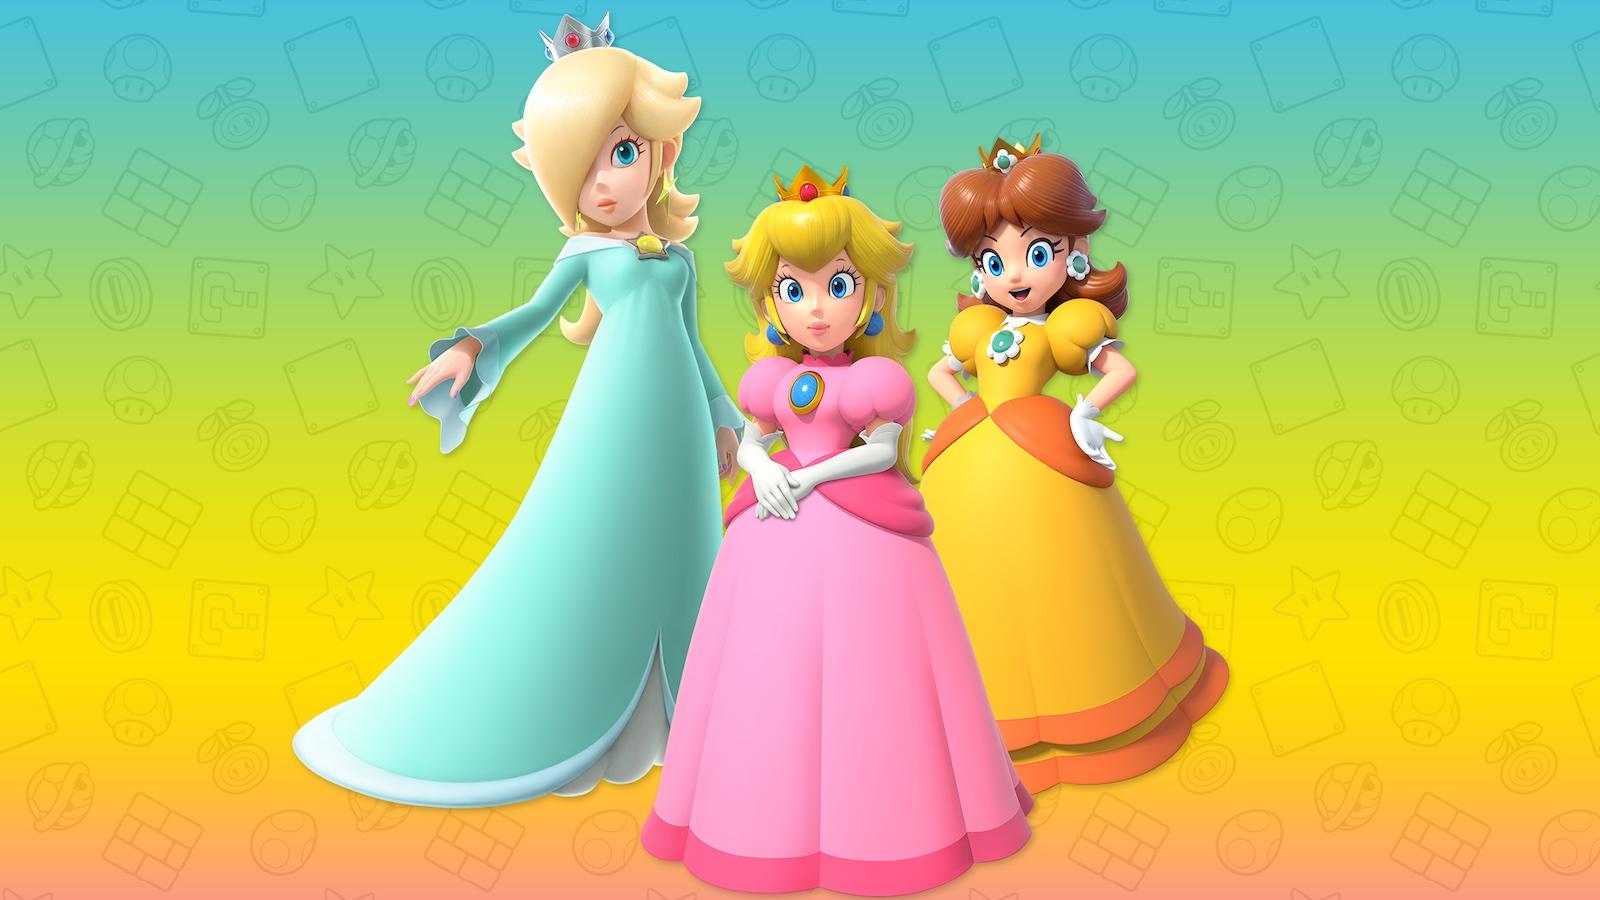 Super Mario Bros Movie 2 Who will play Princess Daisy & Rosalina